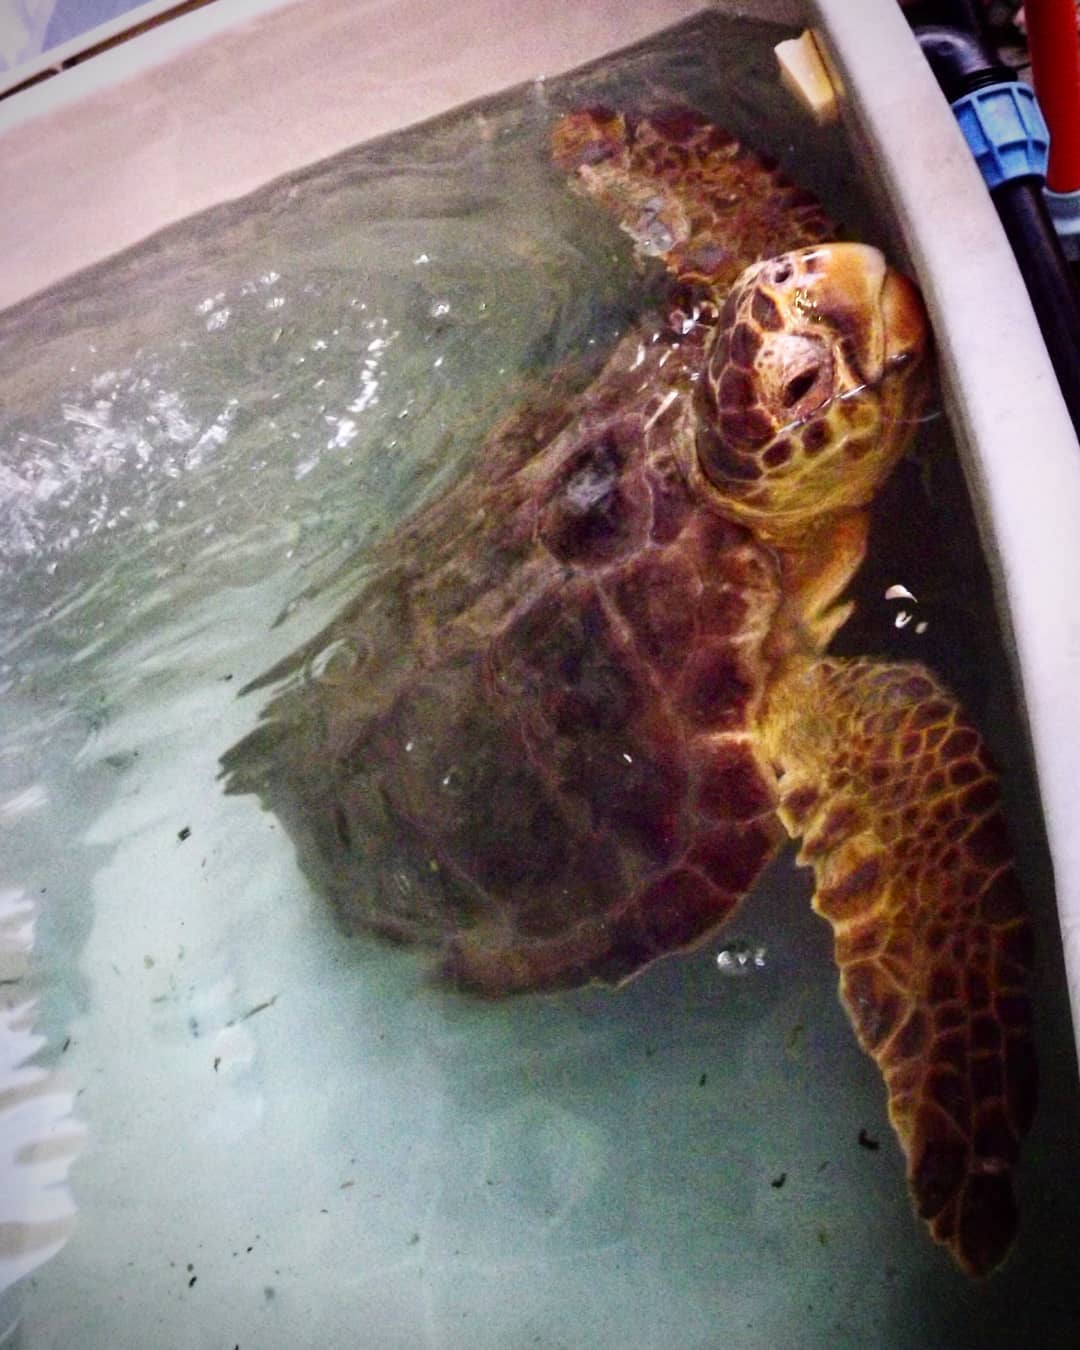 żółw w wodzie, prawdopodobnie w wannie